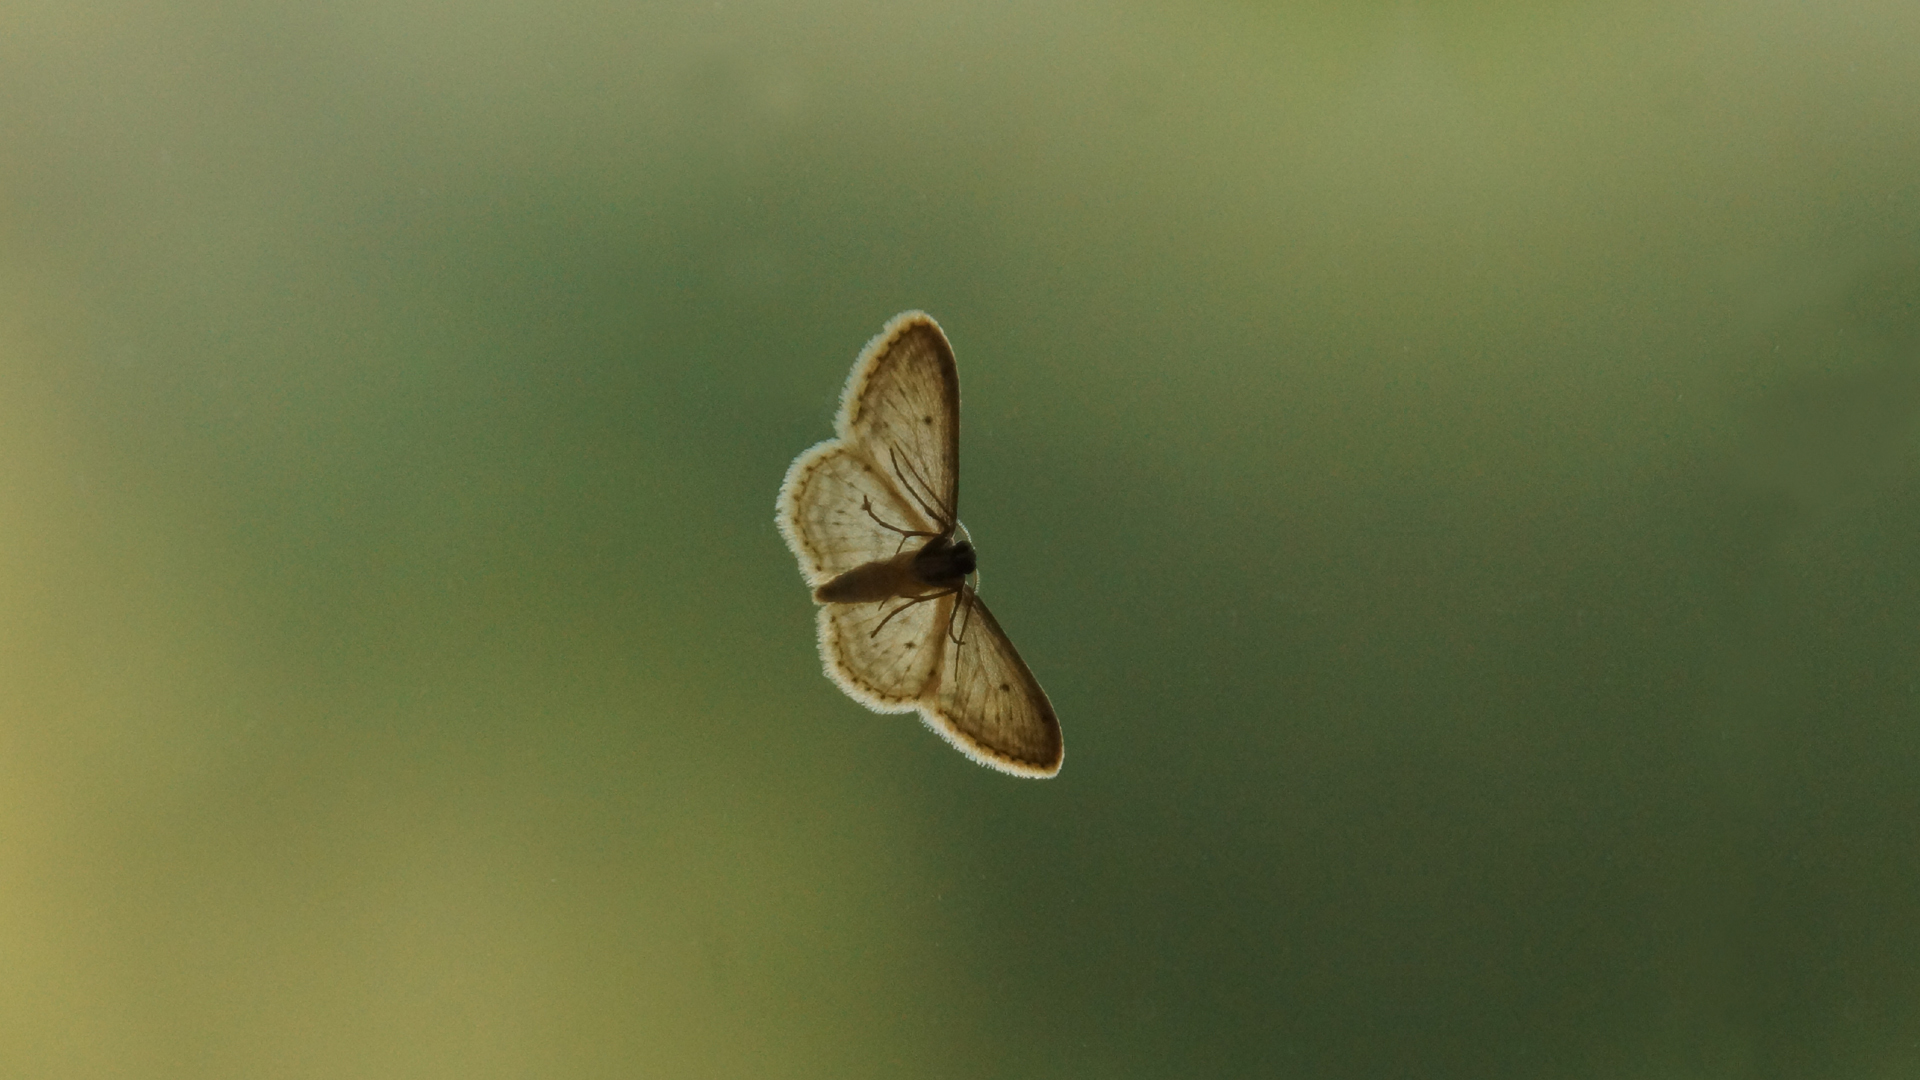 Fotostrecke Insekten: unbestimmter Falter